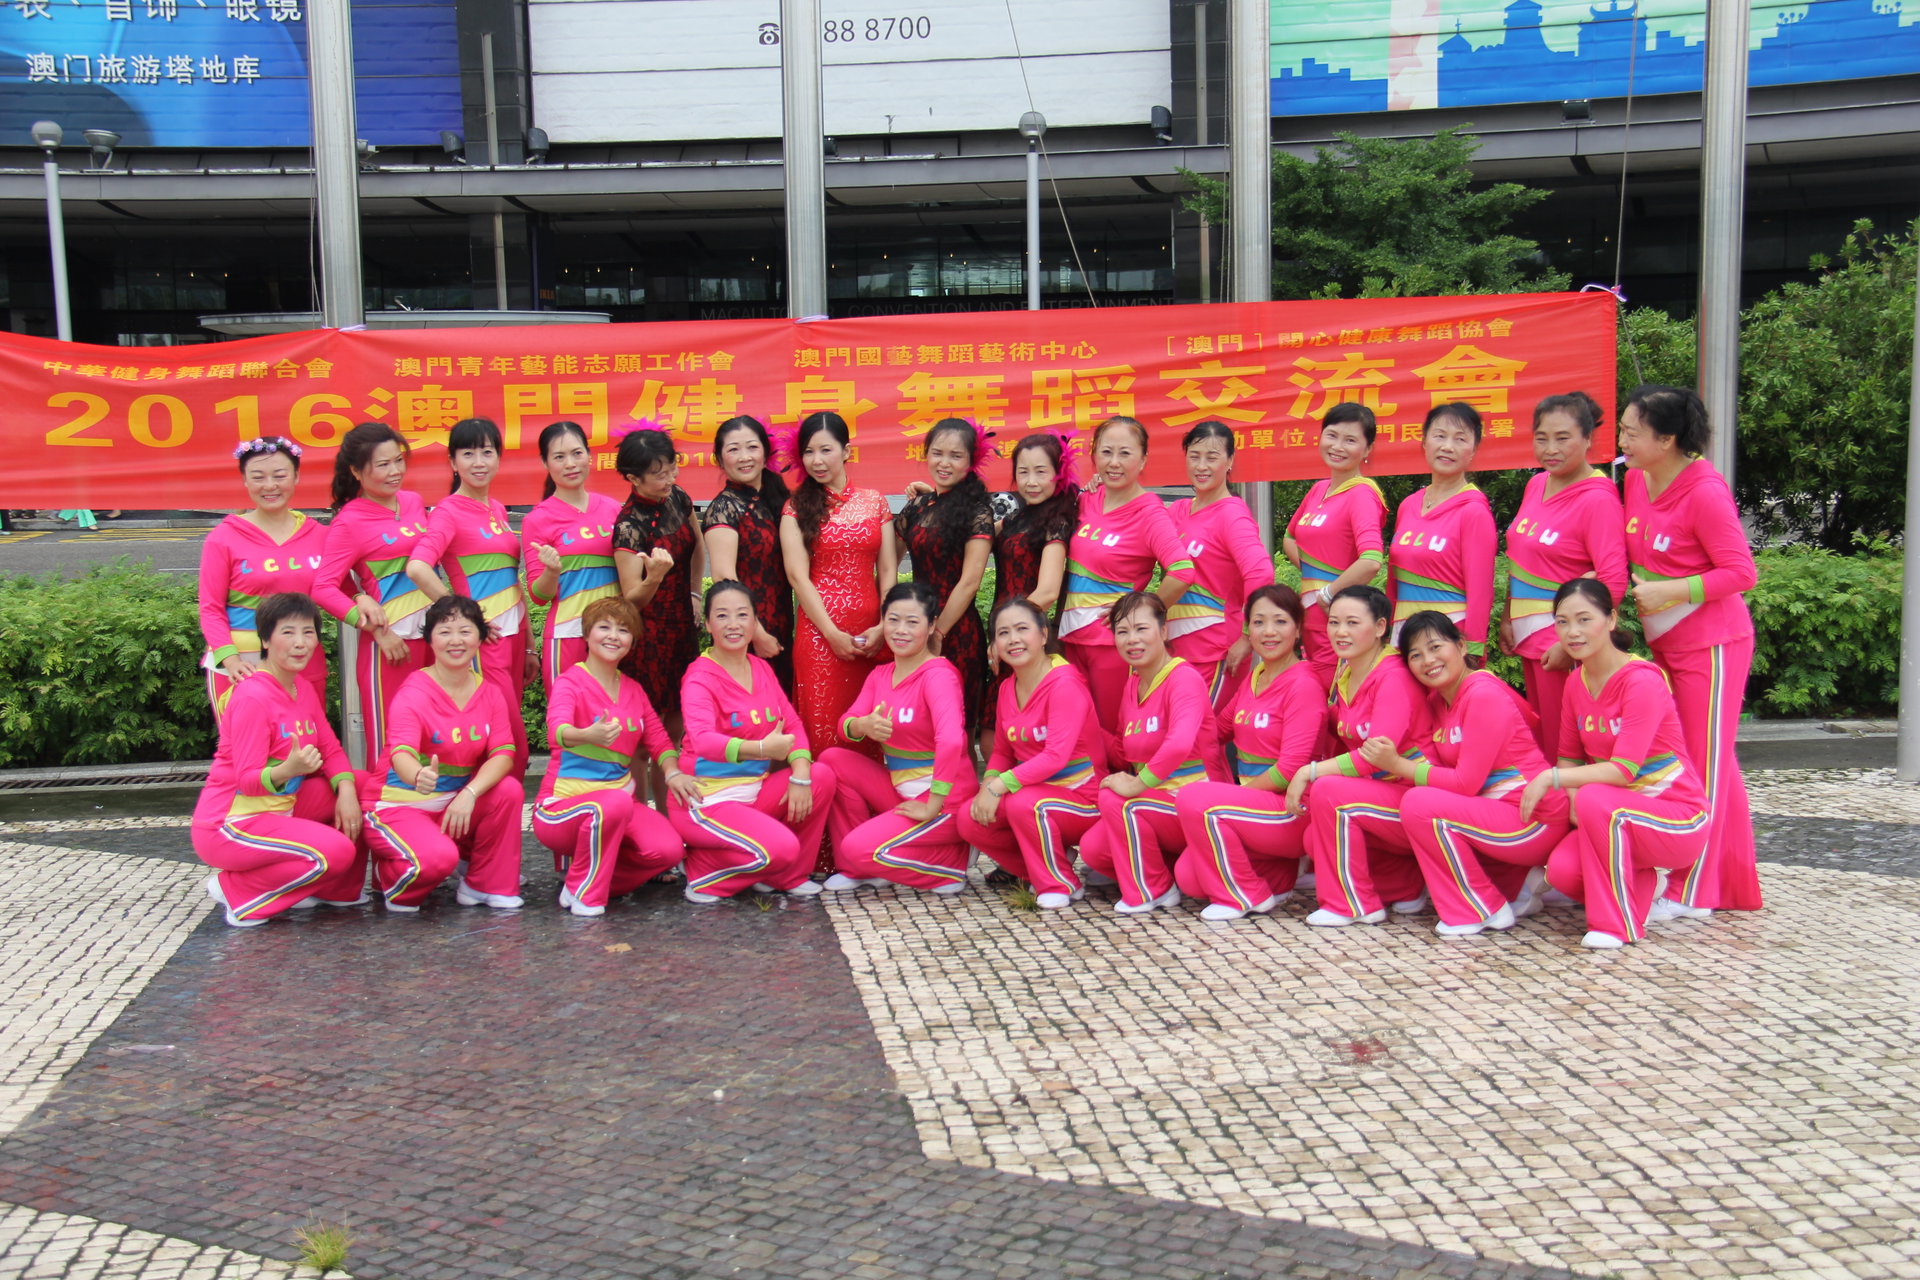 中華健身舞蹈聯合會